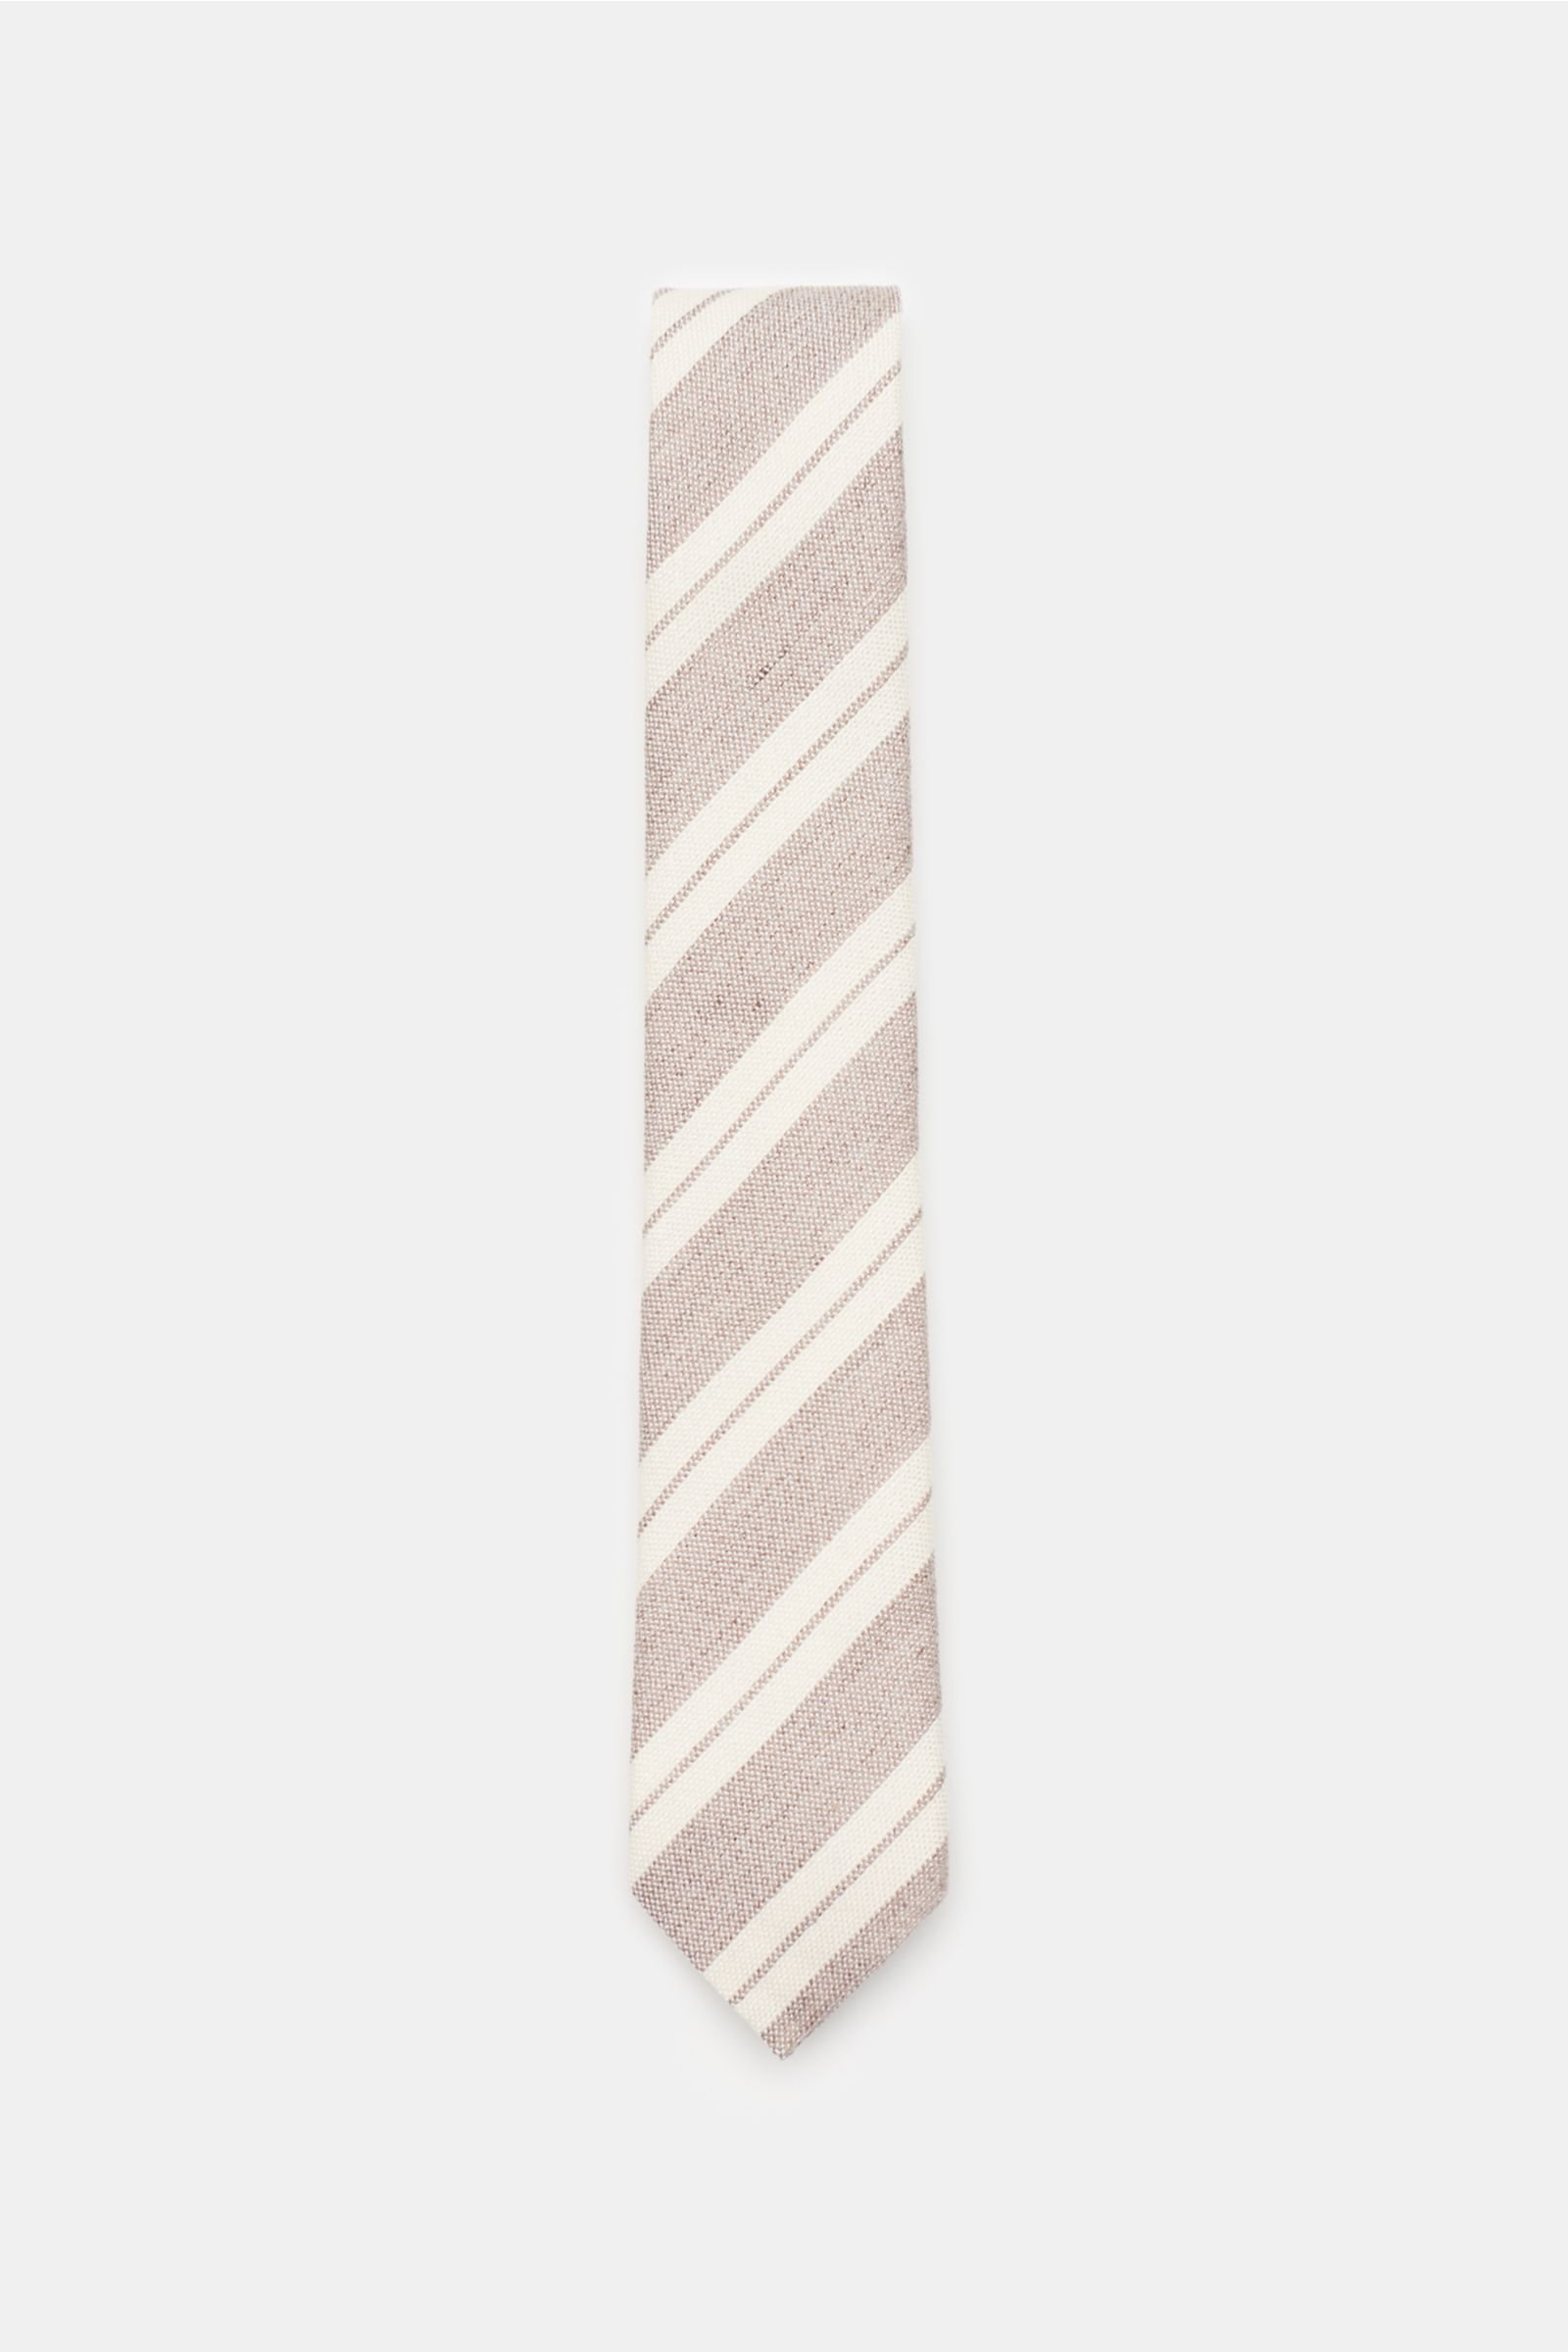 Tie beige/cream striped